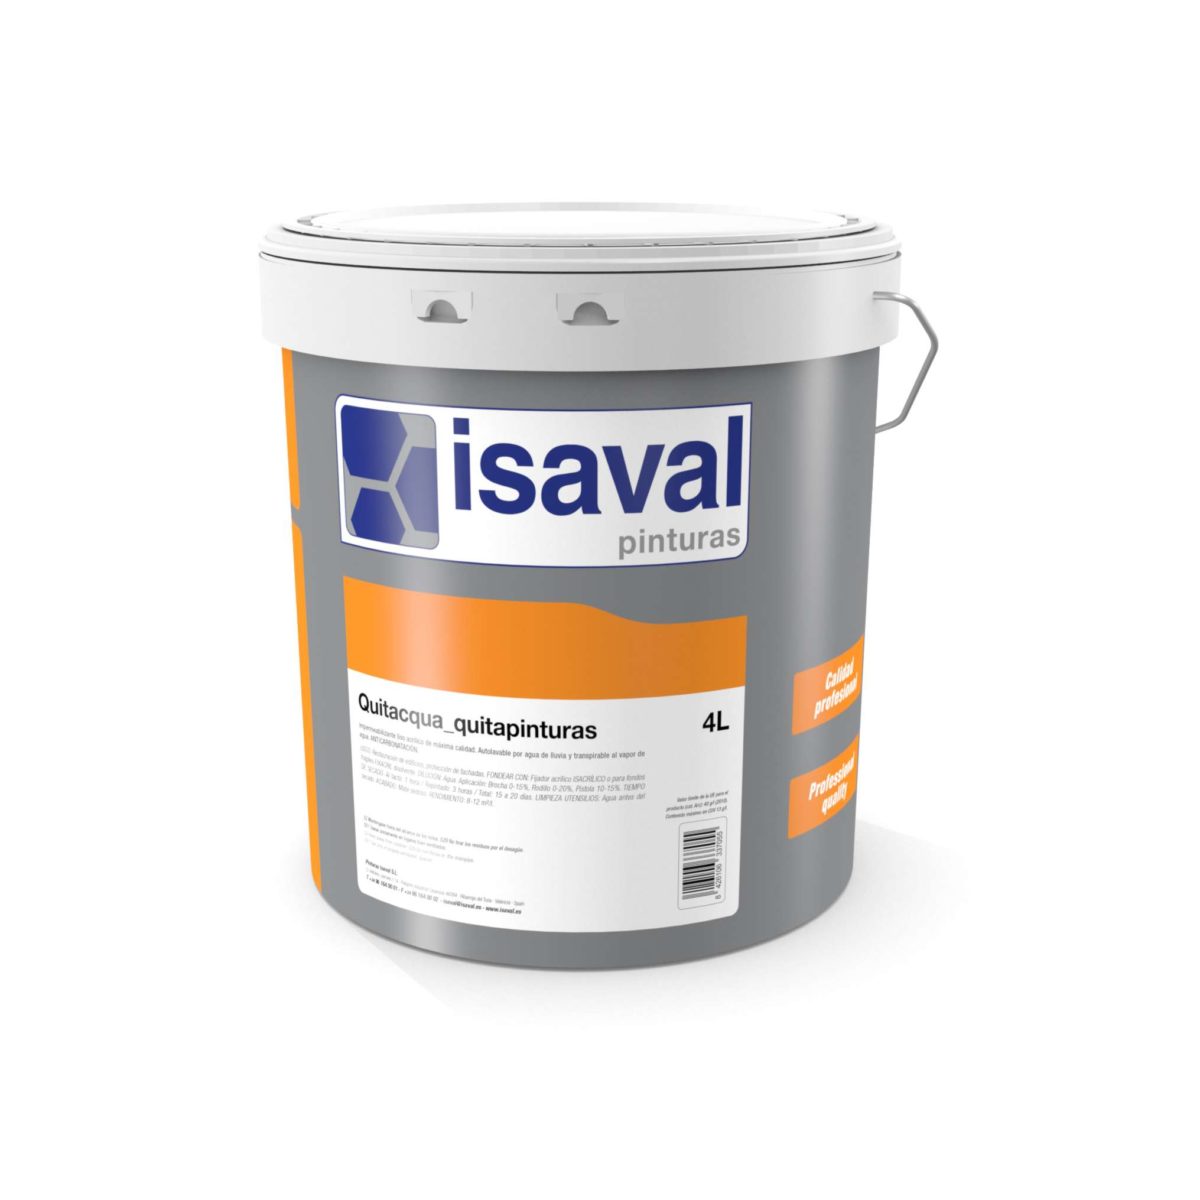 Qué productos emplear para quitar la pintura? • Isaval